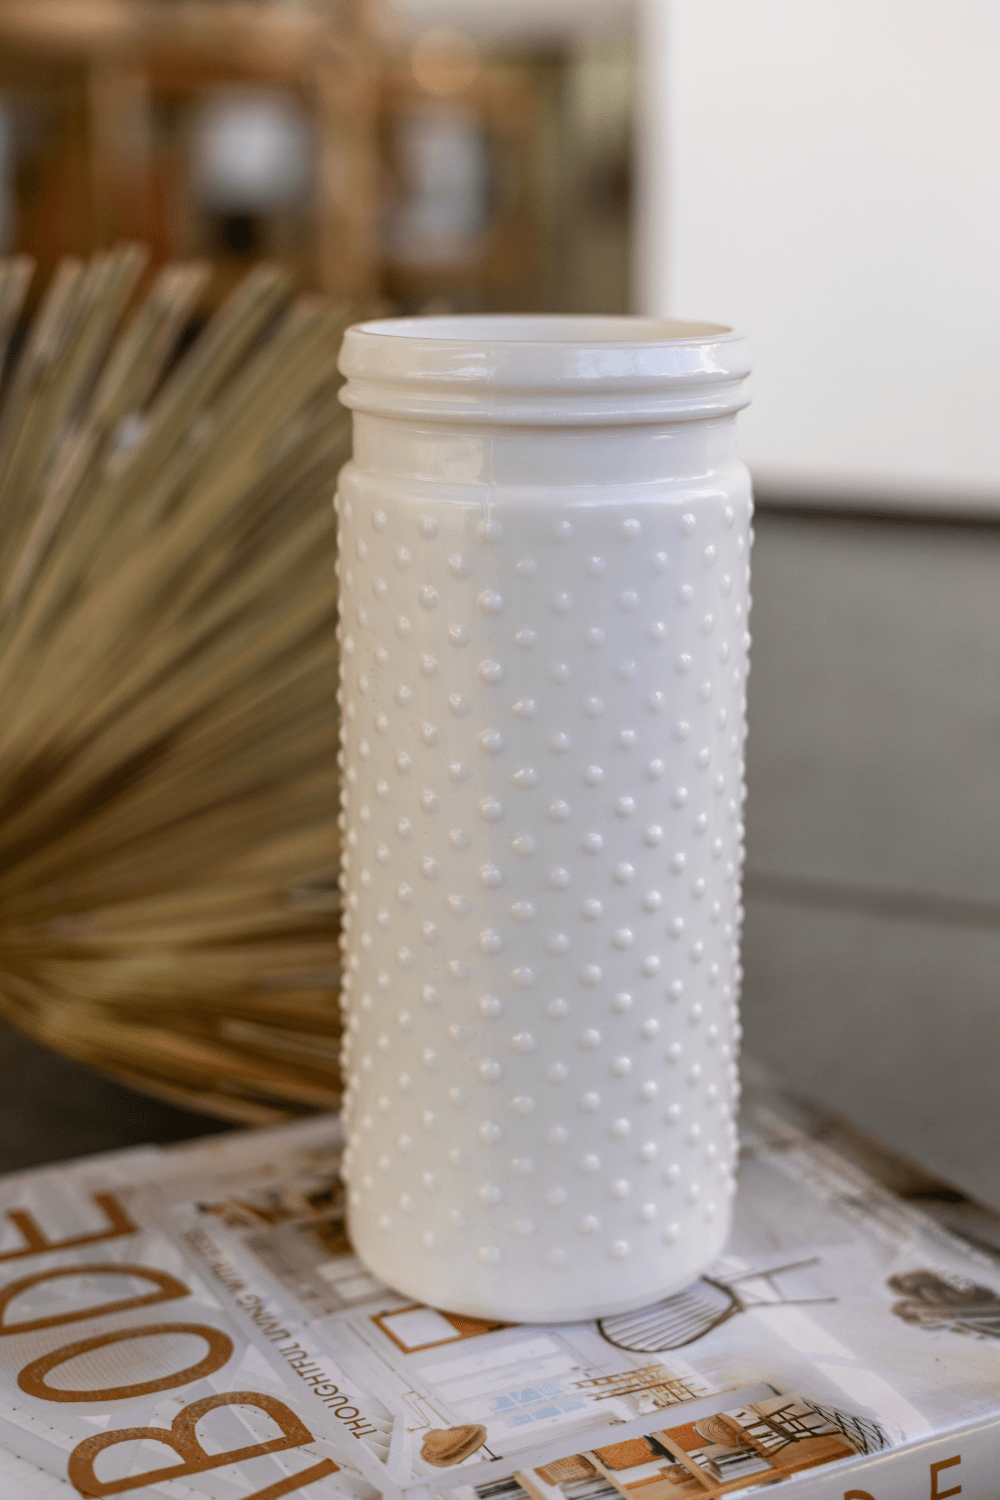 Mode vase in white